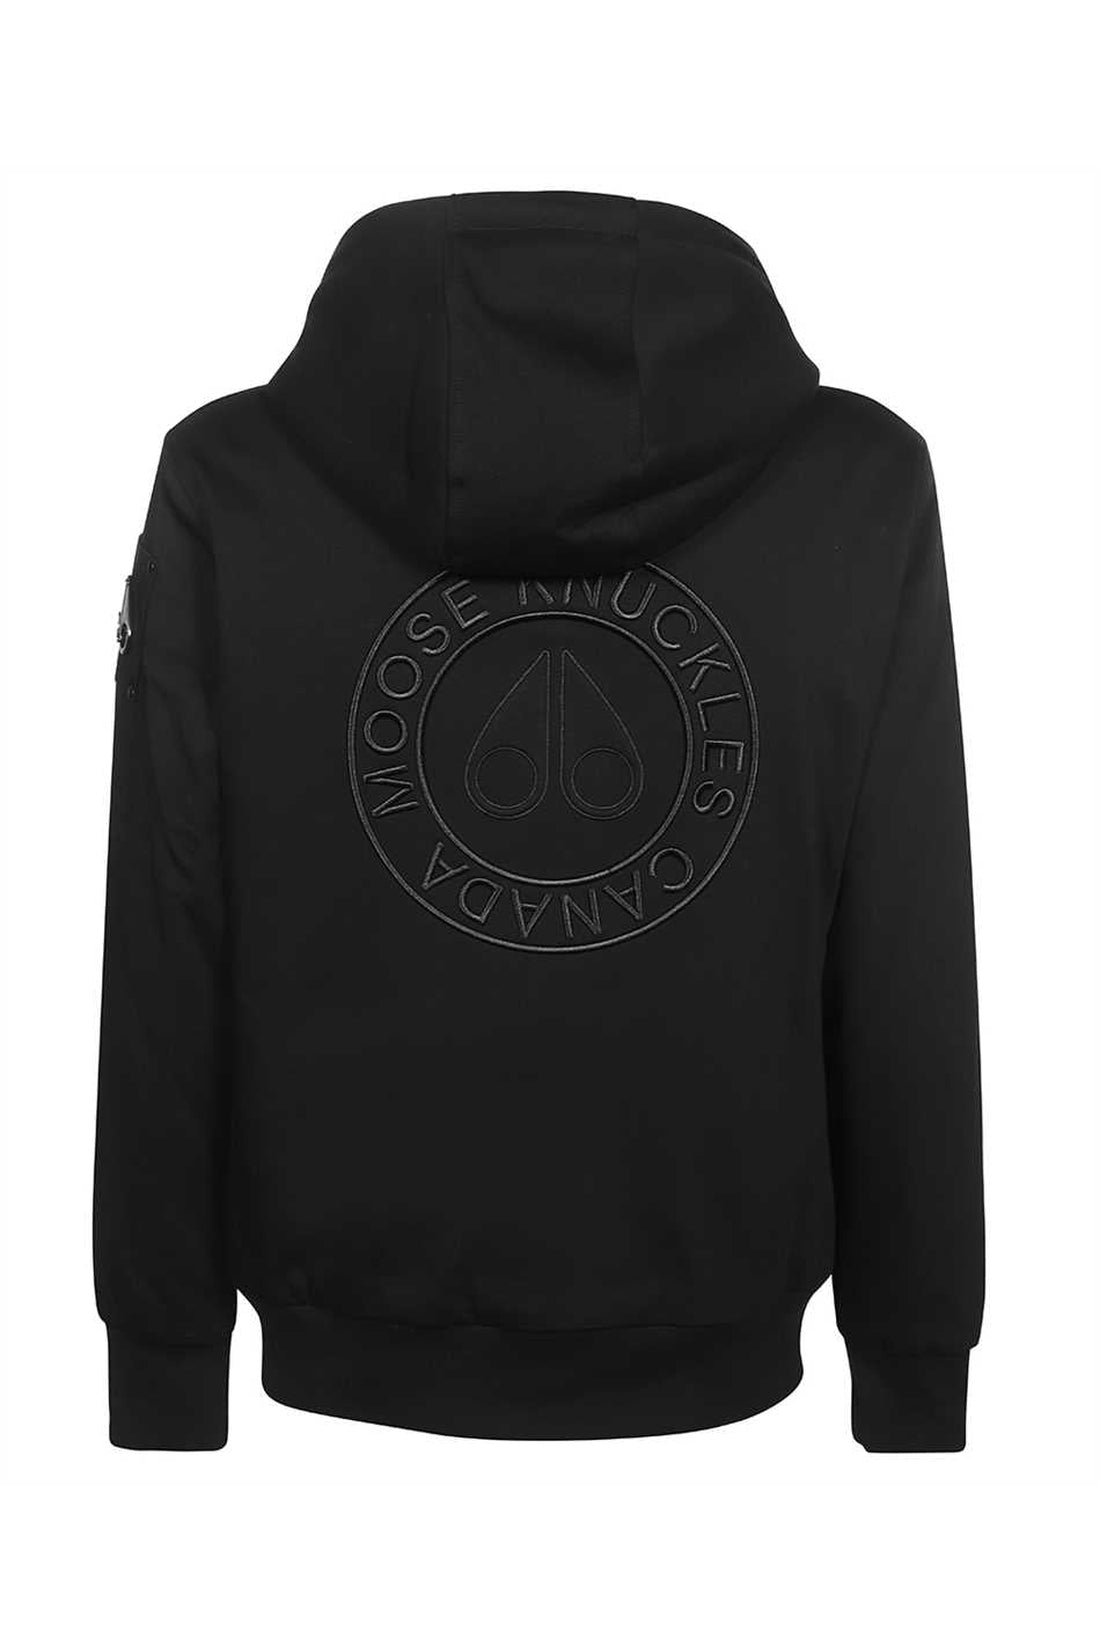 Moose Knuckles-OUTLET-SALE-Full zip hoodie-ARCHIVIST